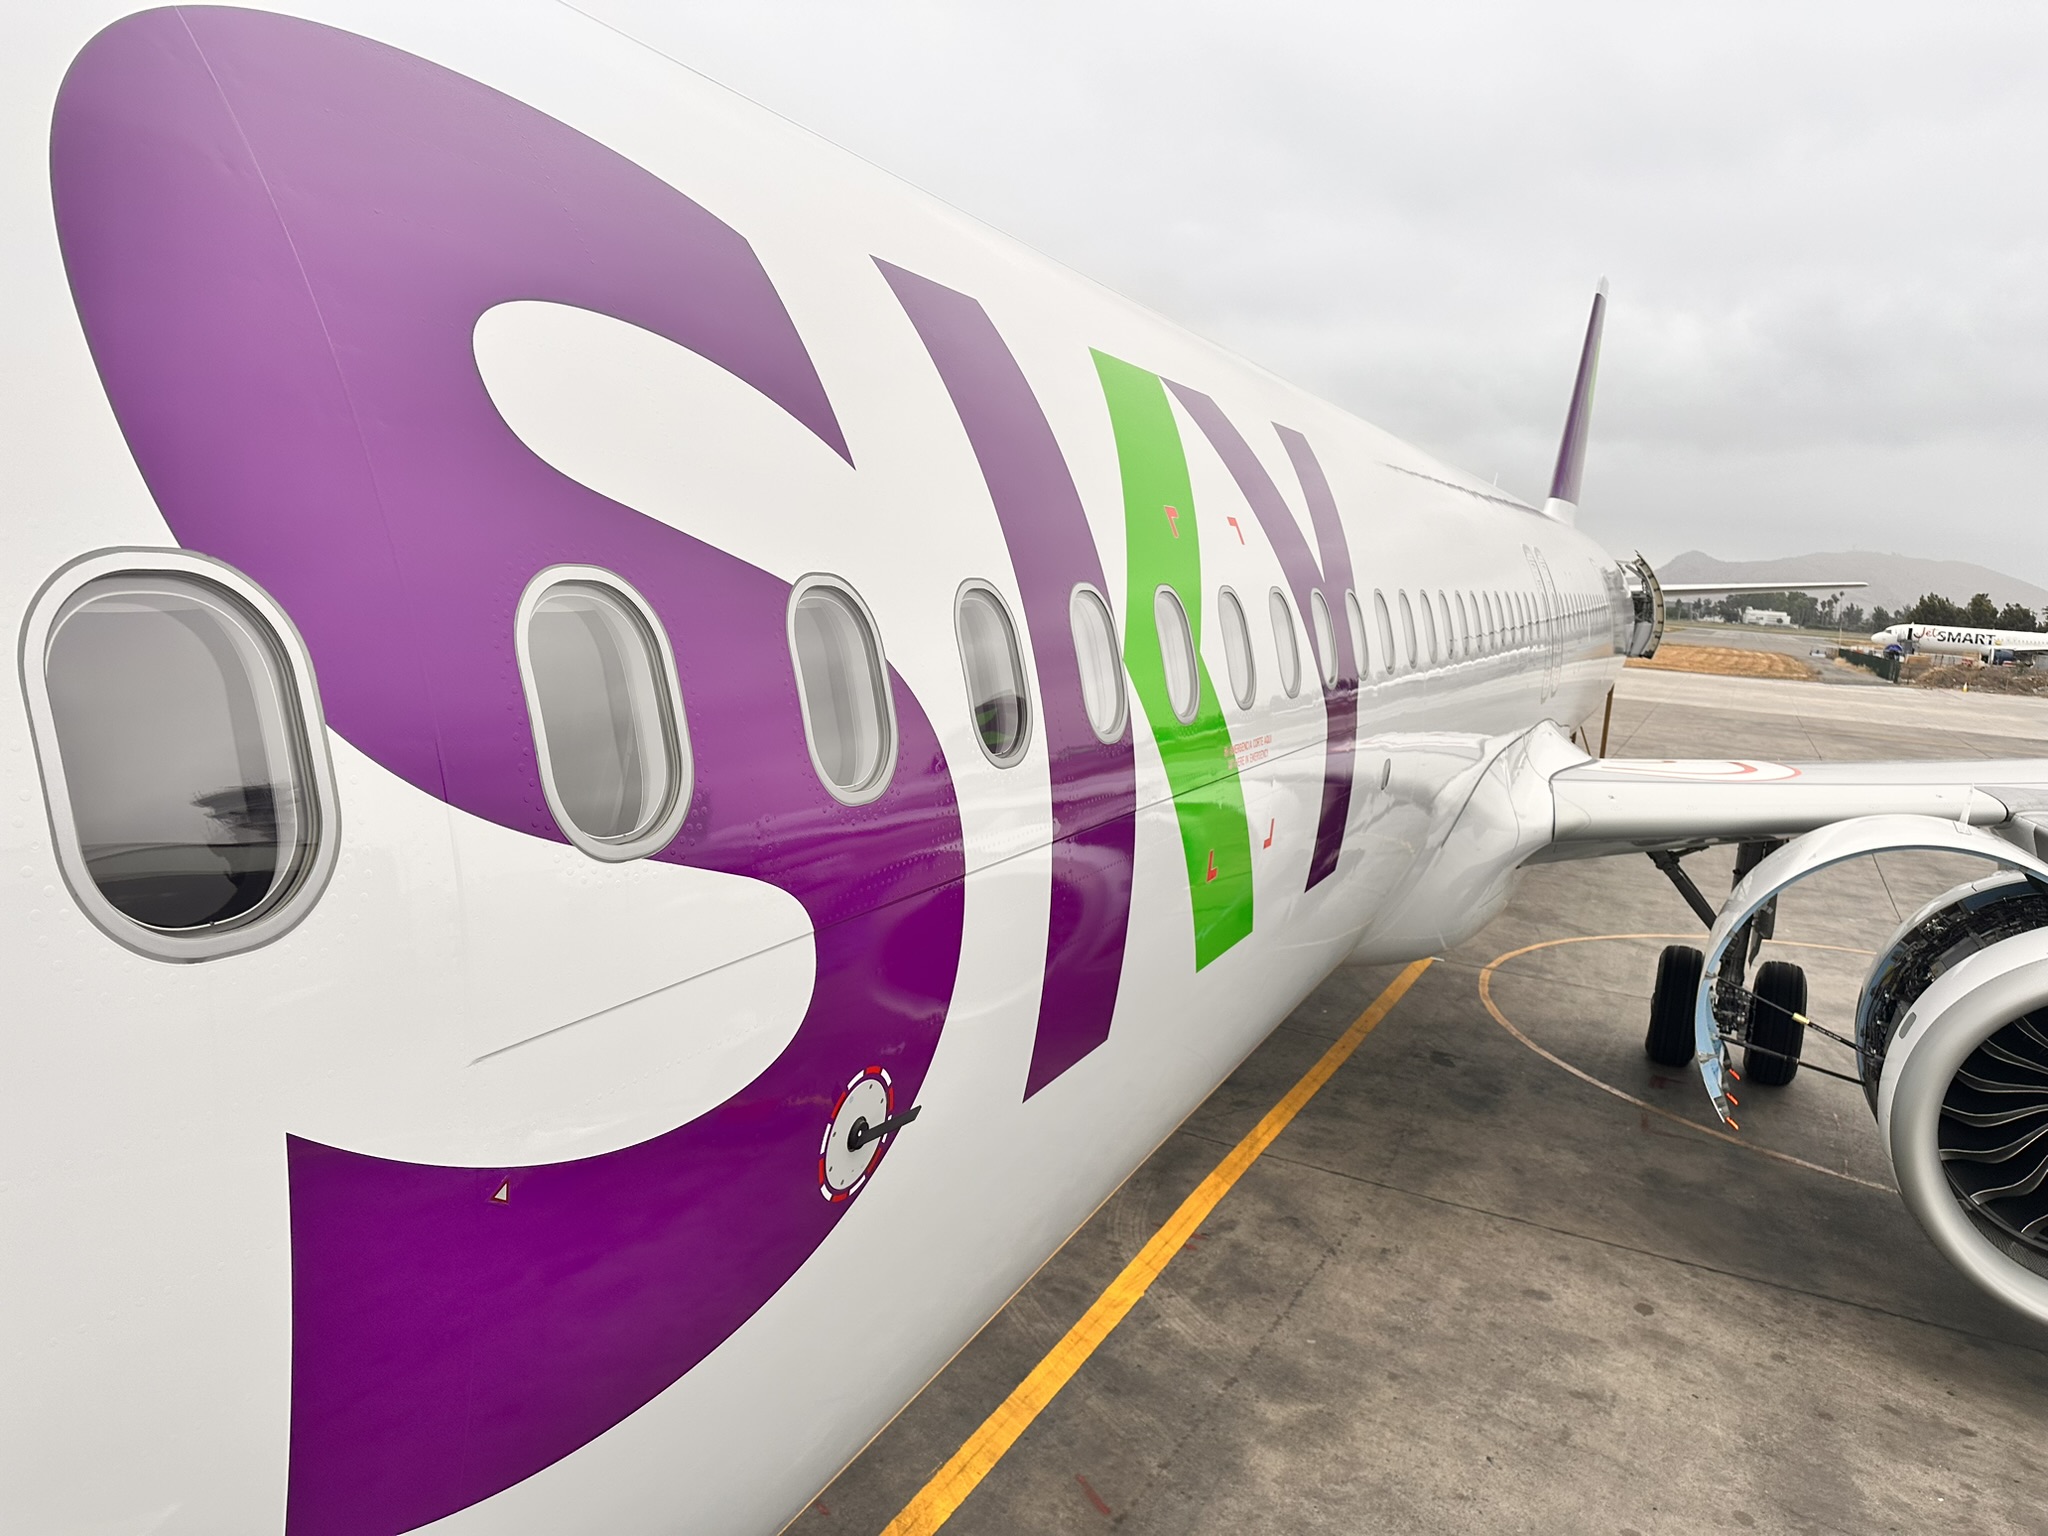 SKY ha recibido su quinto avión Airbus A321neo